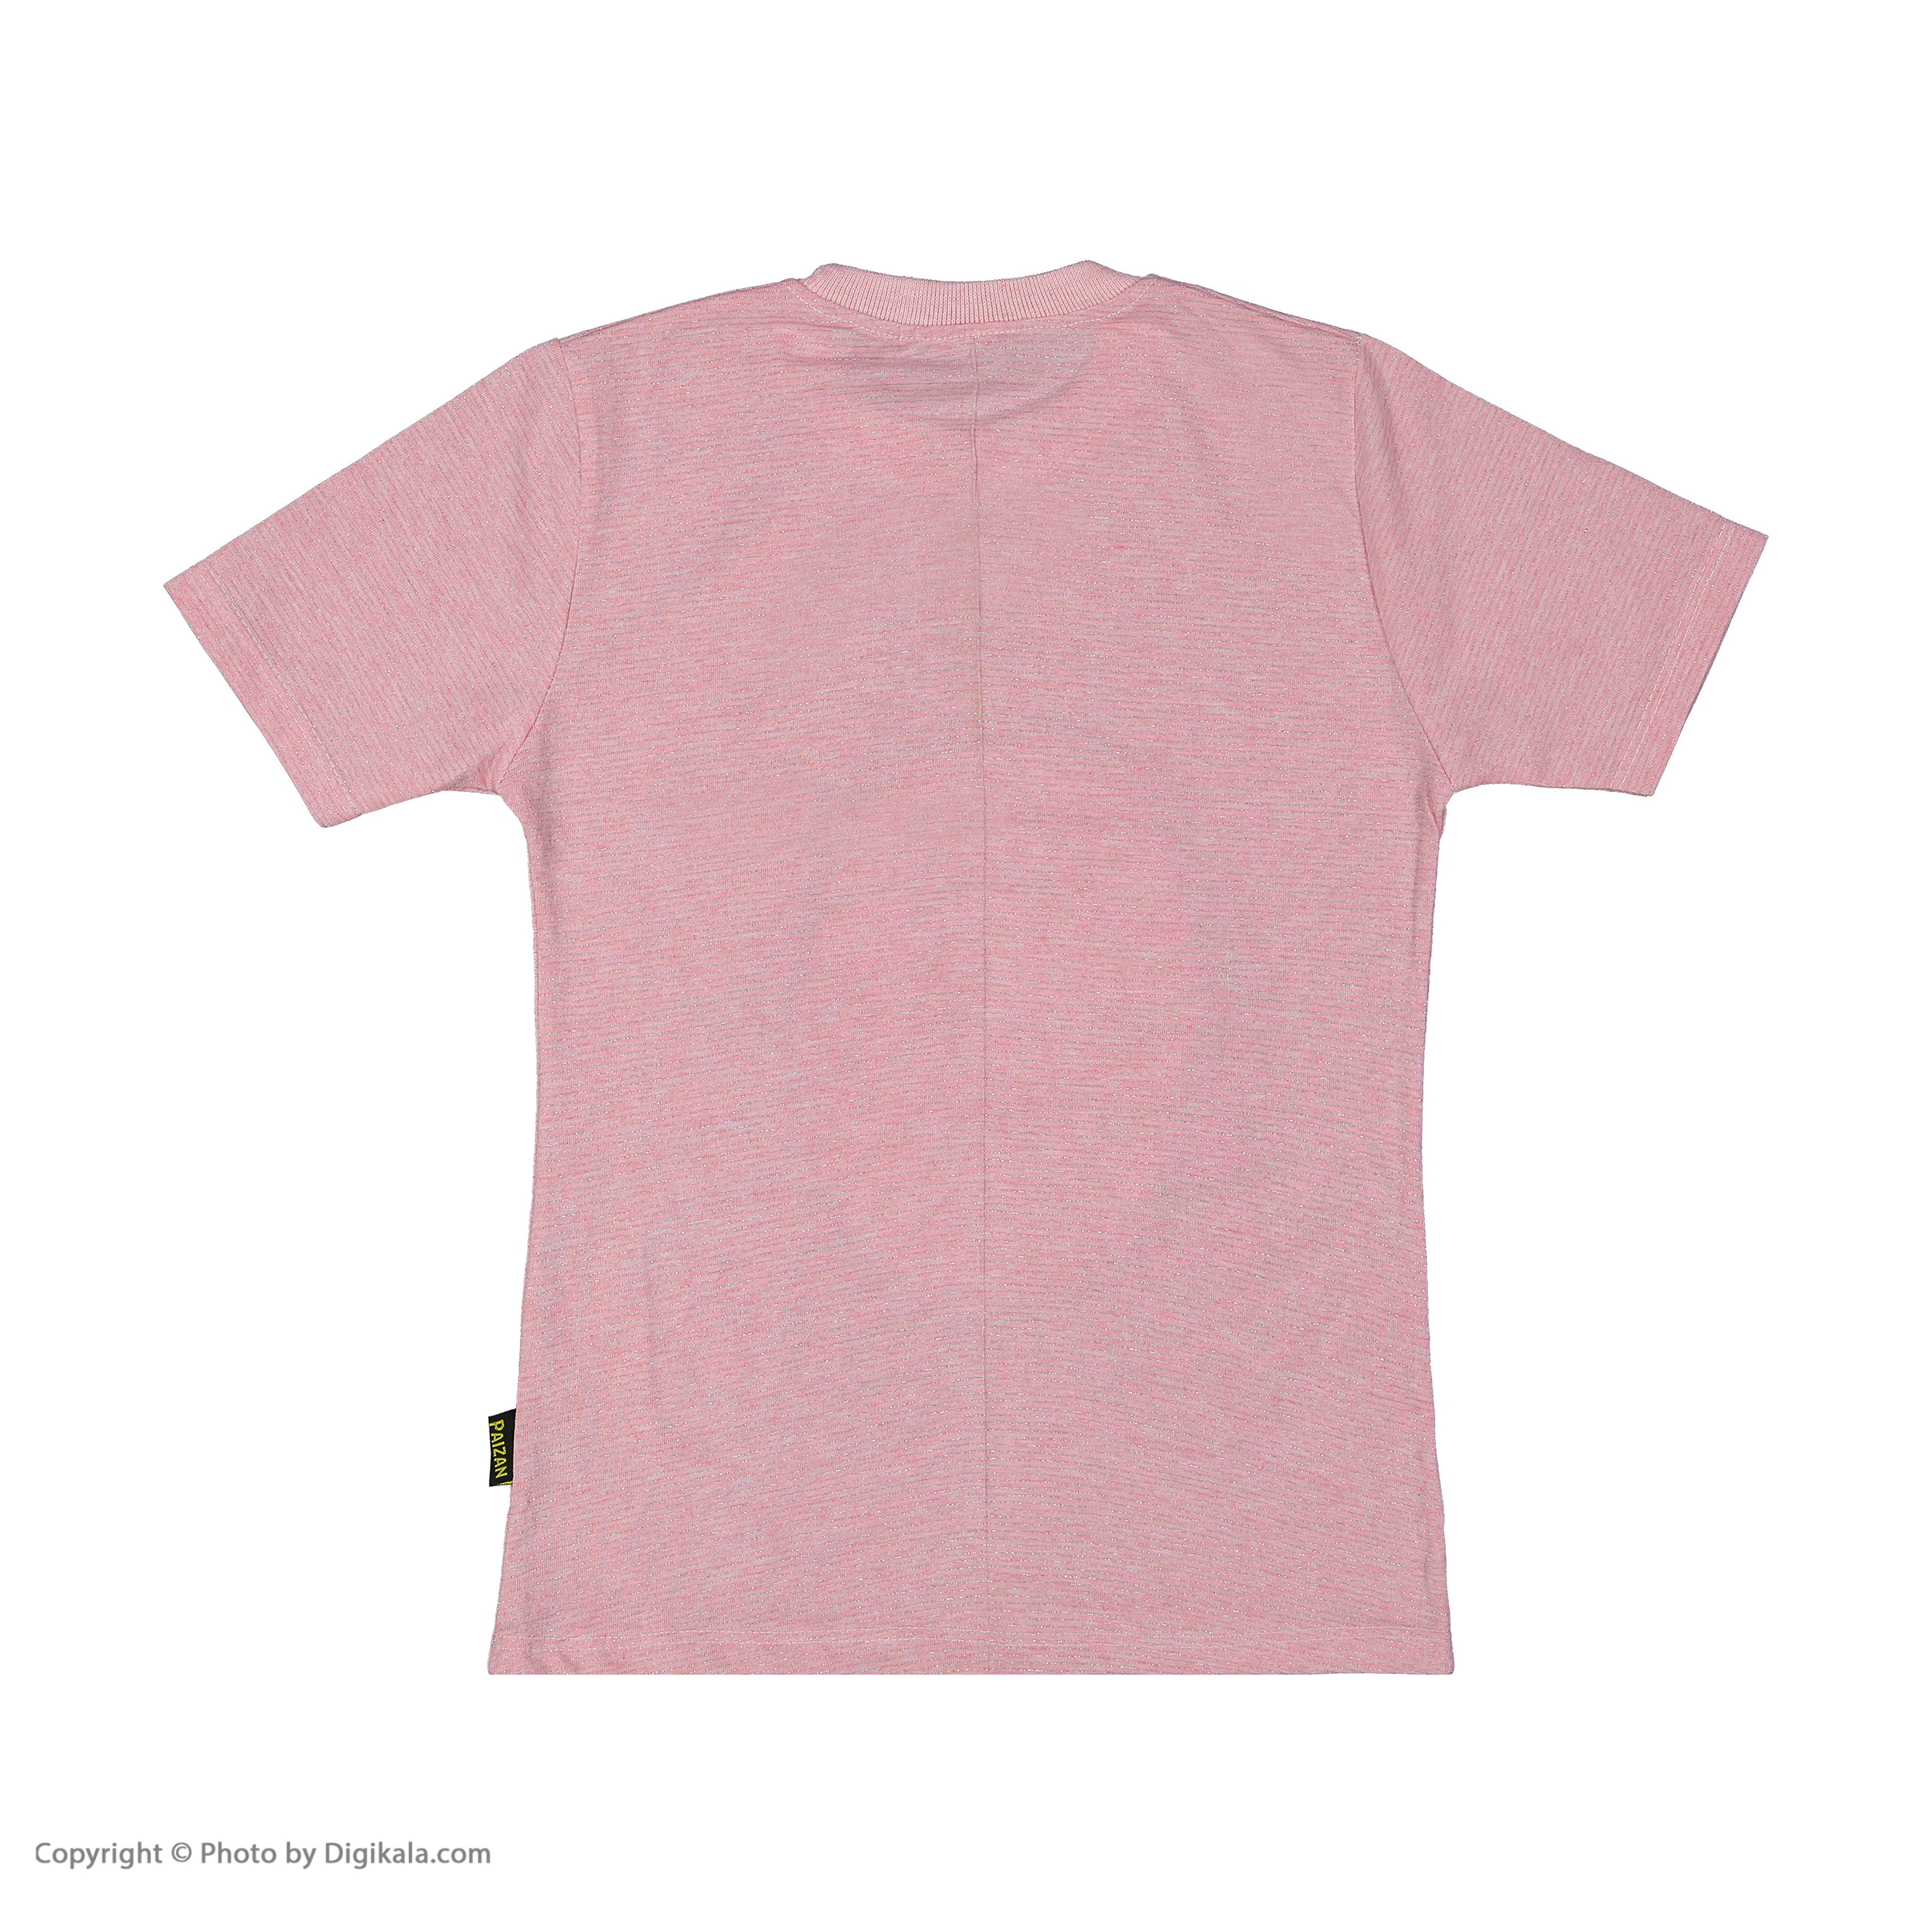 ست تی شرت و شلوارک دخترانه بانالی مدل فلوریدا کد 3543 -  - 9